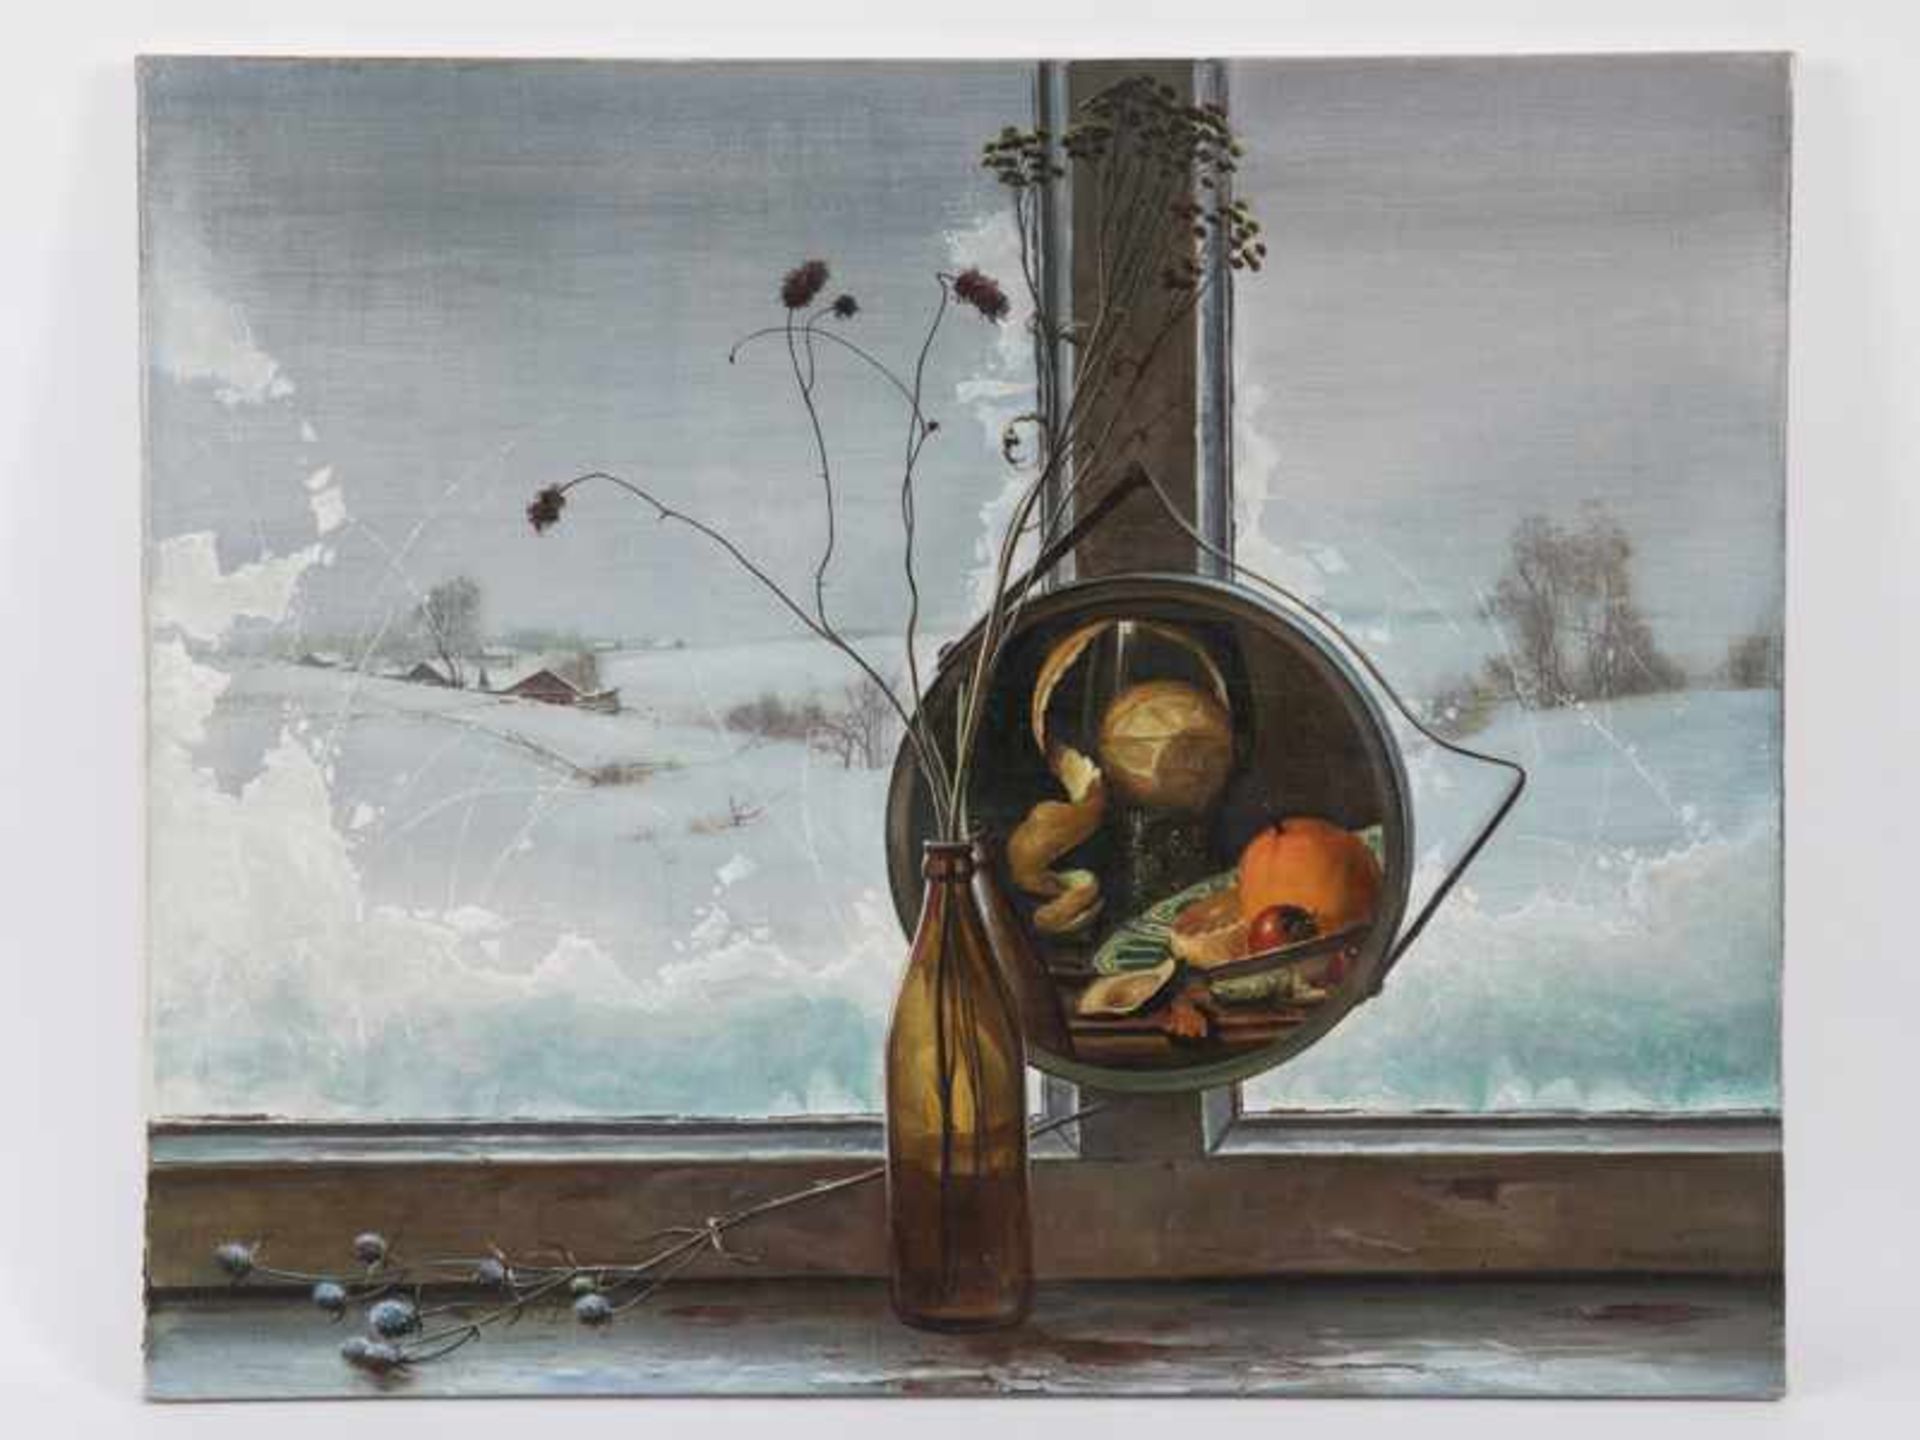 Kitchigin, Georgij Petrowitsch (* 1951 in Omsk/ Sibirien). Öl auf Leinwand, "Eisblumengerahmter